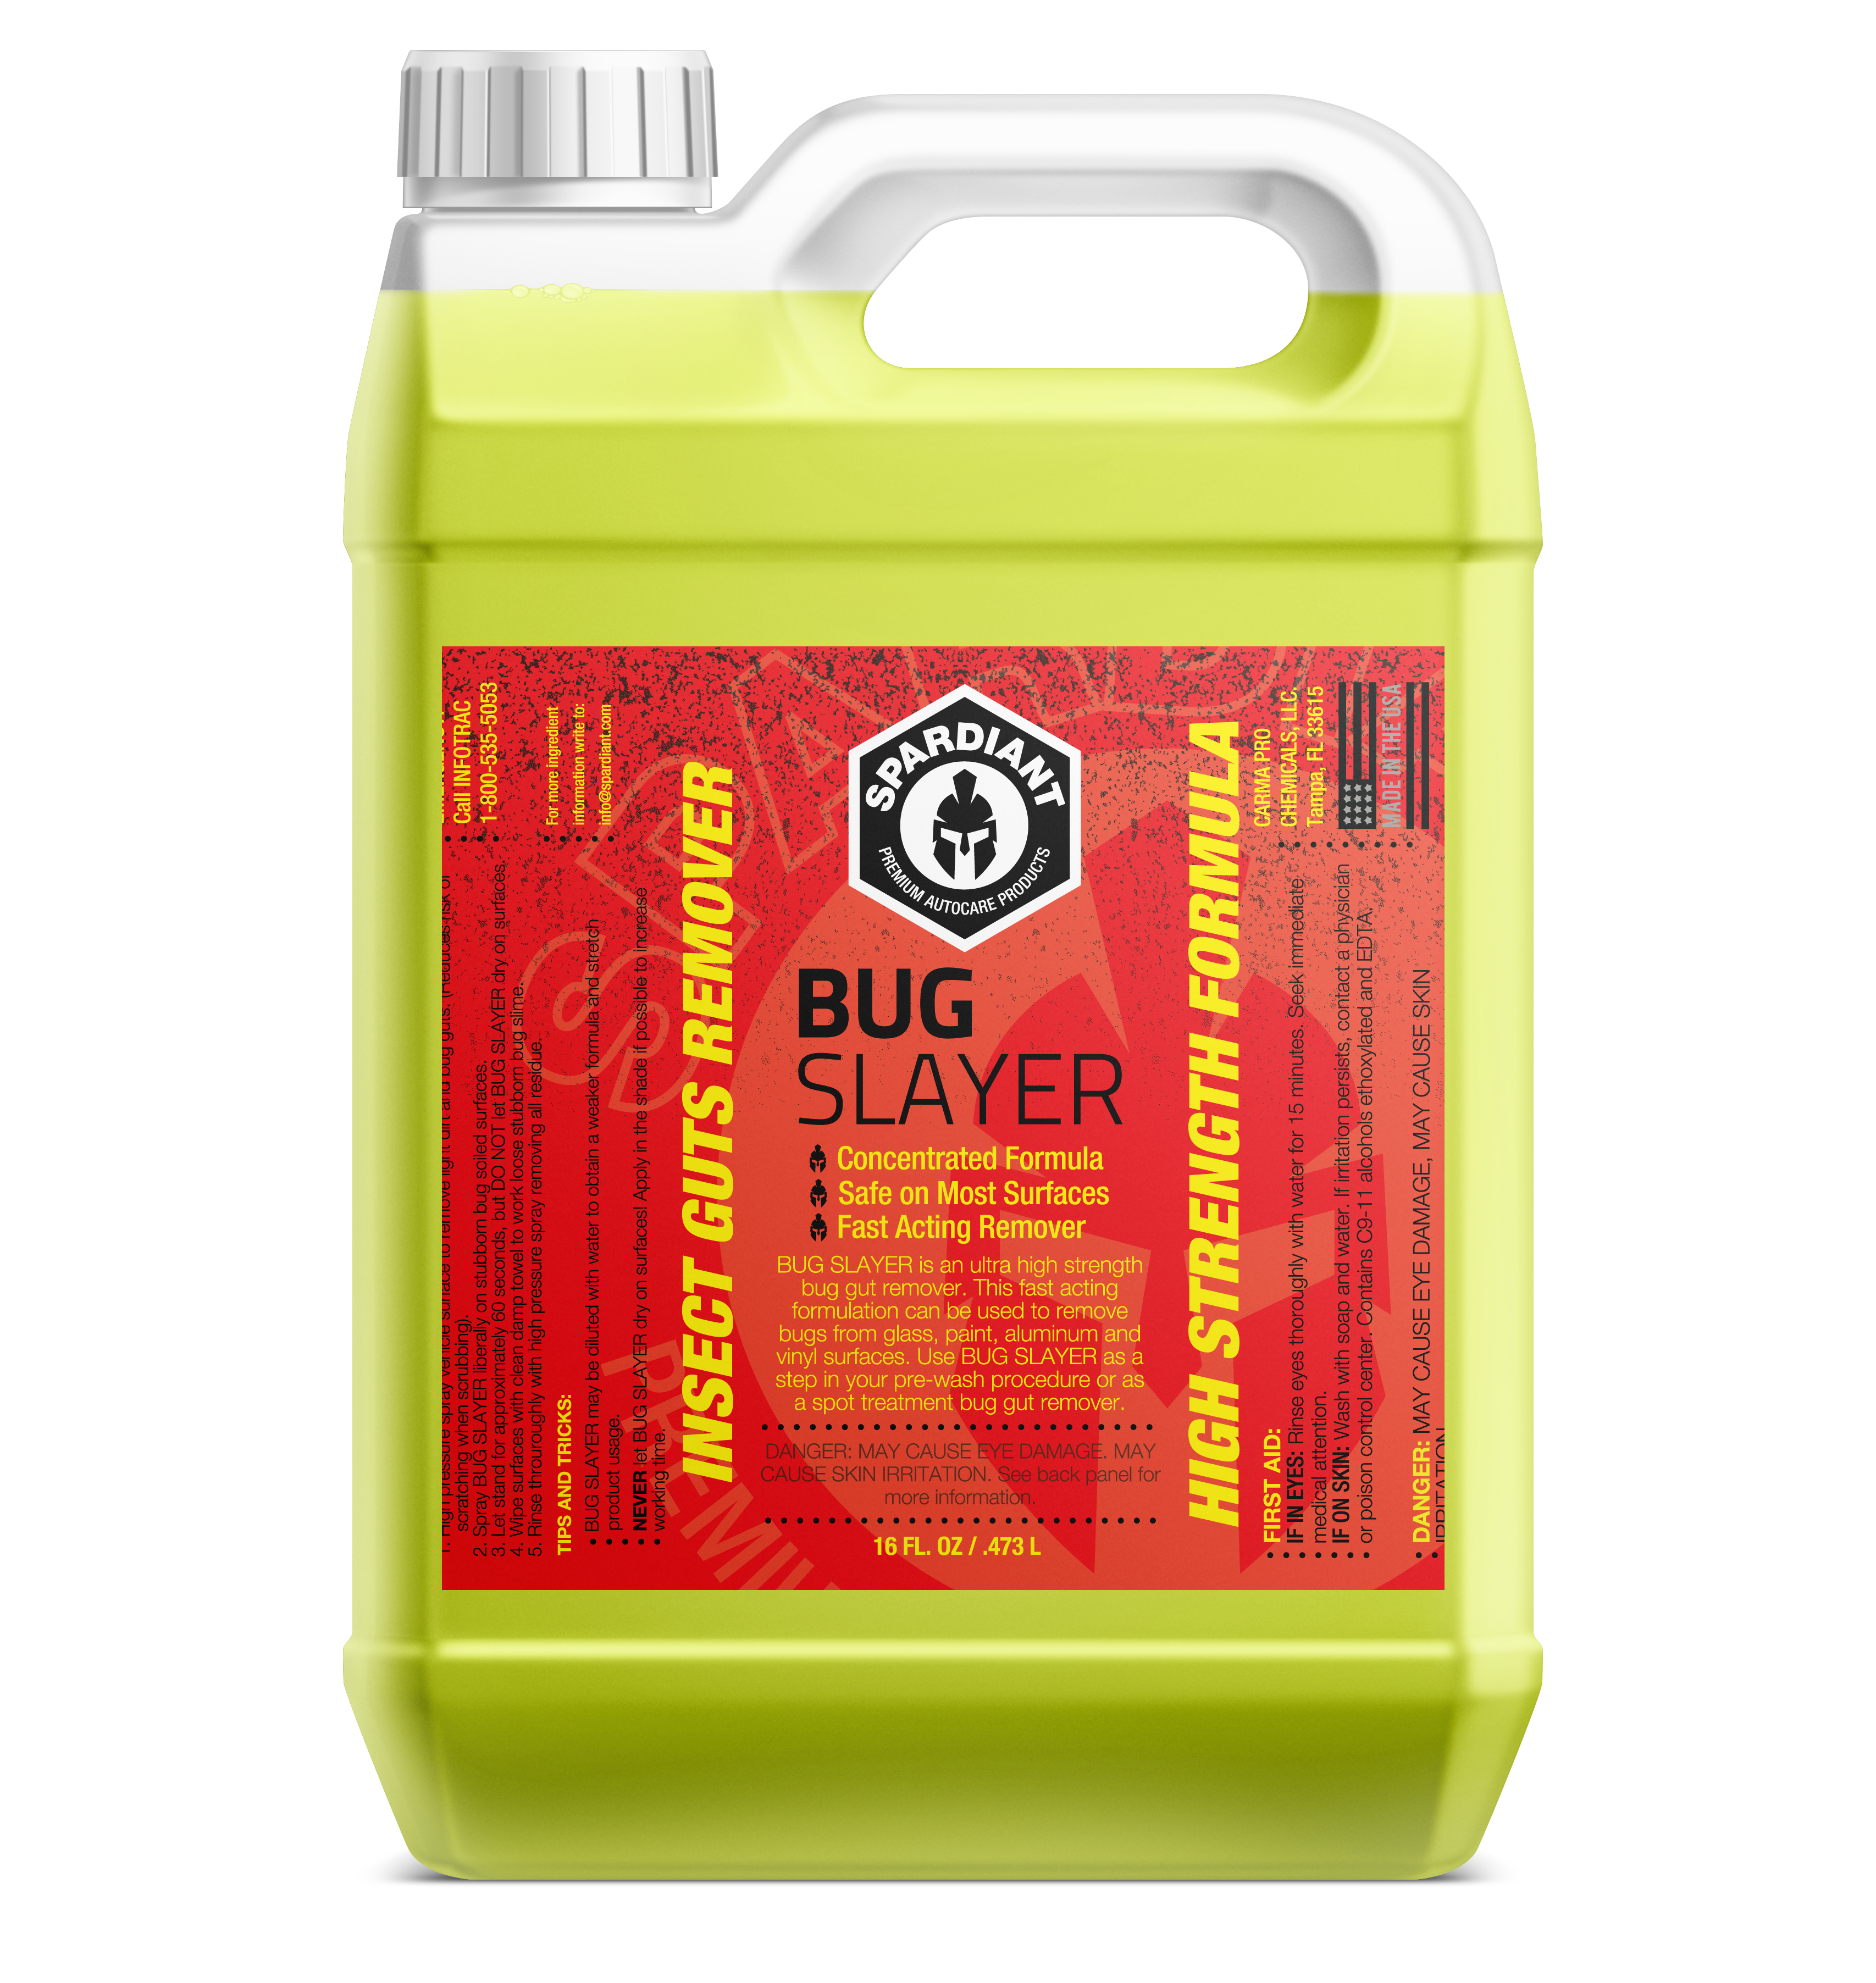 BUG SLAYER - SPARDIANT Bug Remover